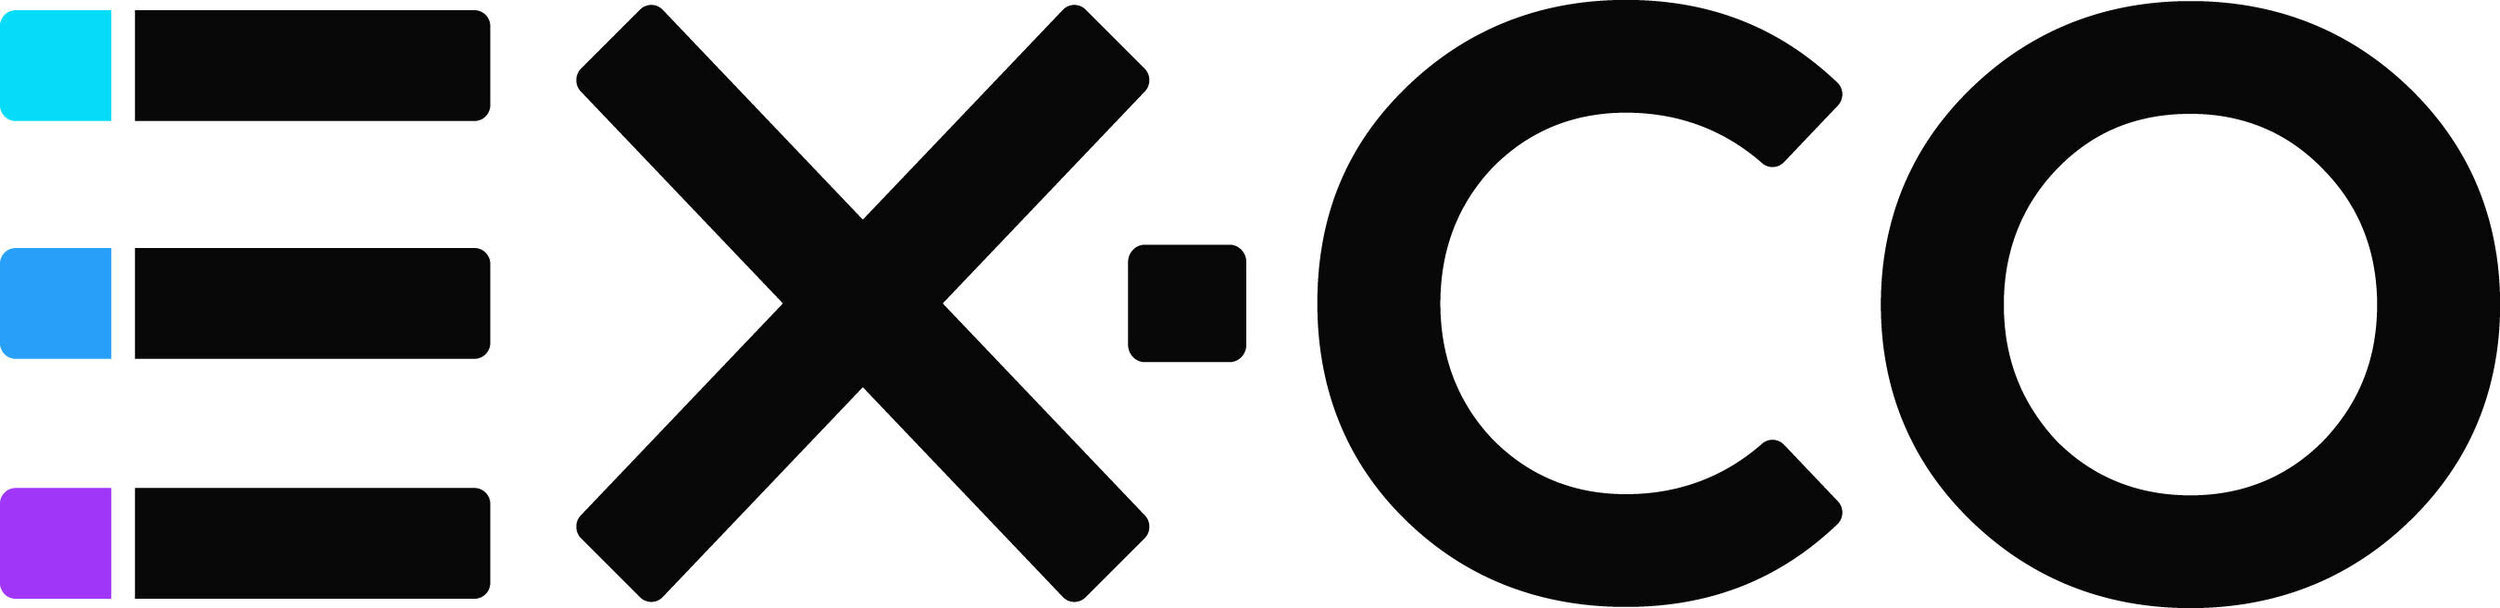 ex.co+logo.jpg